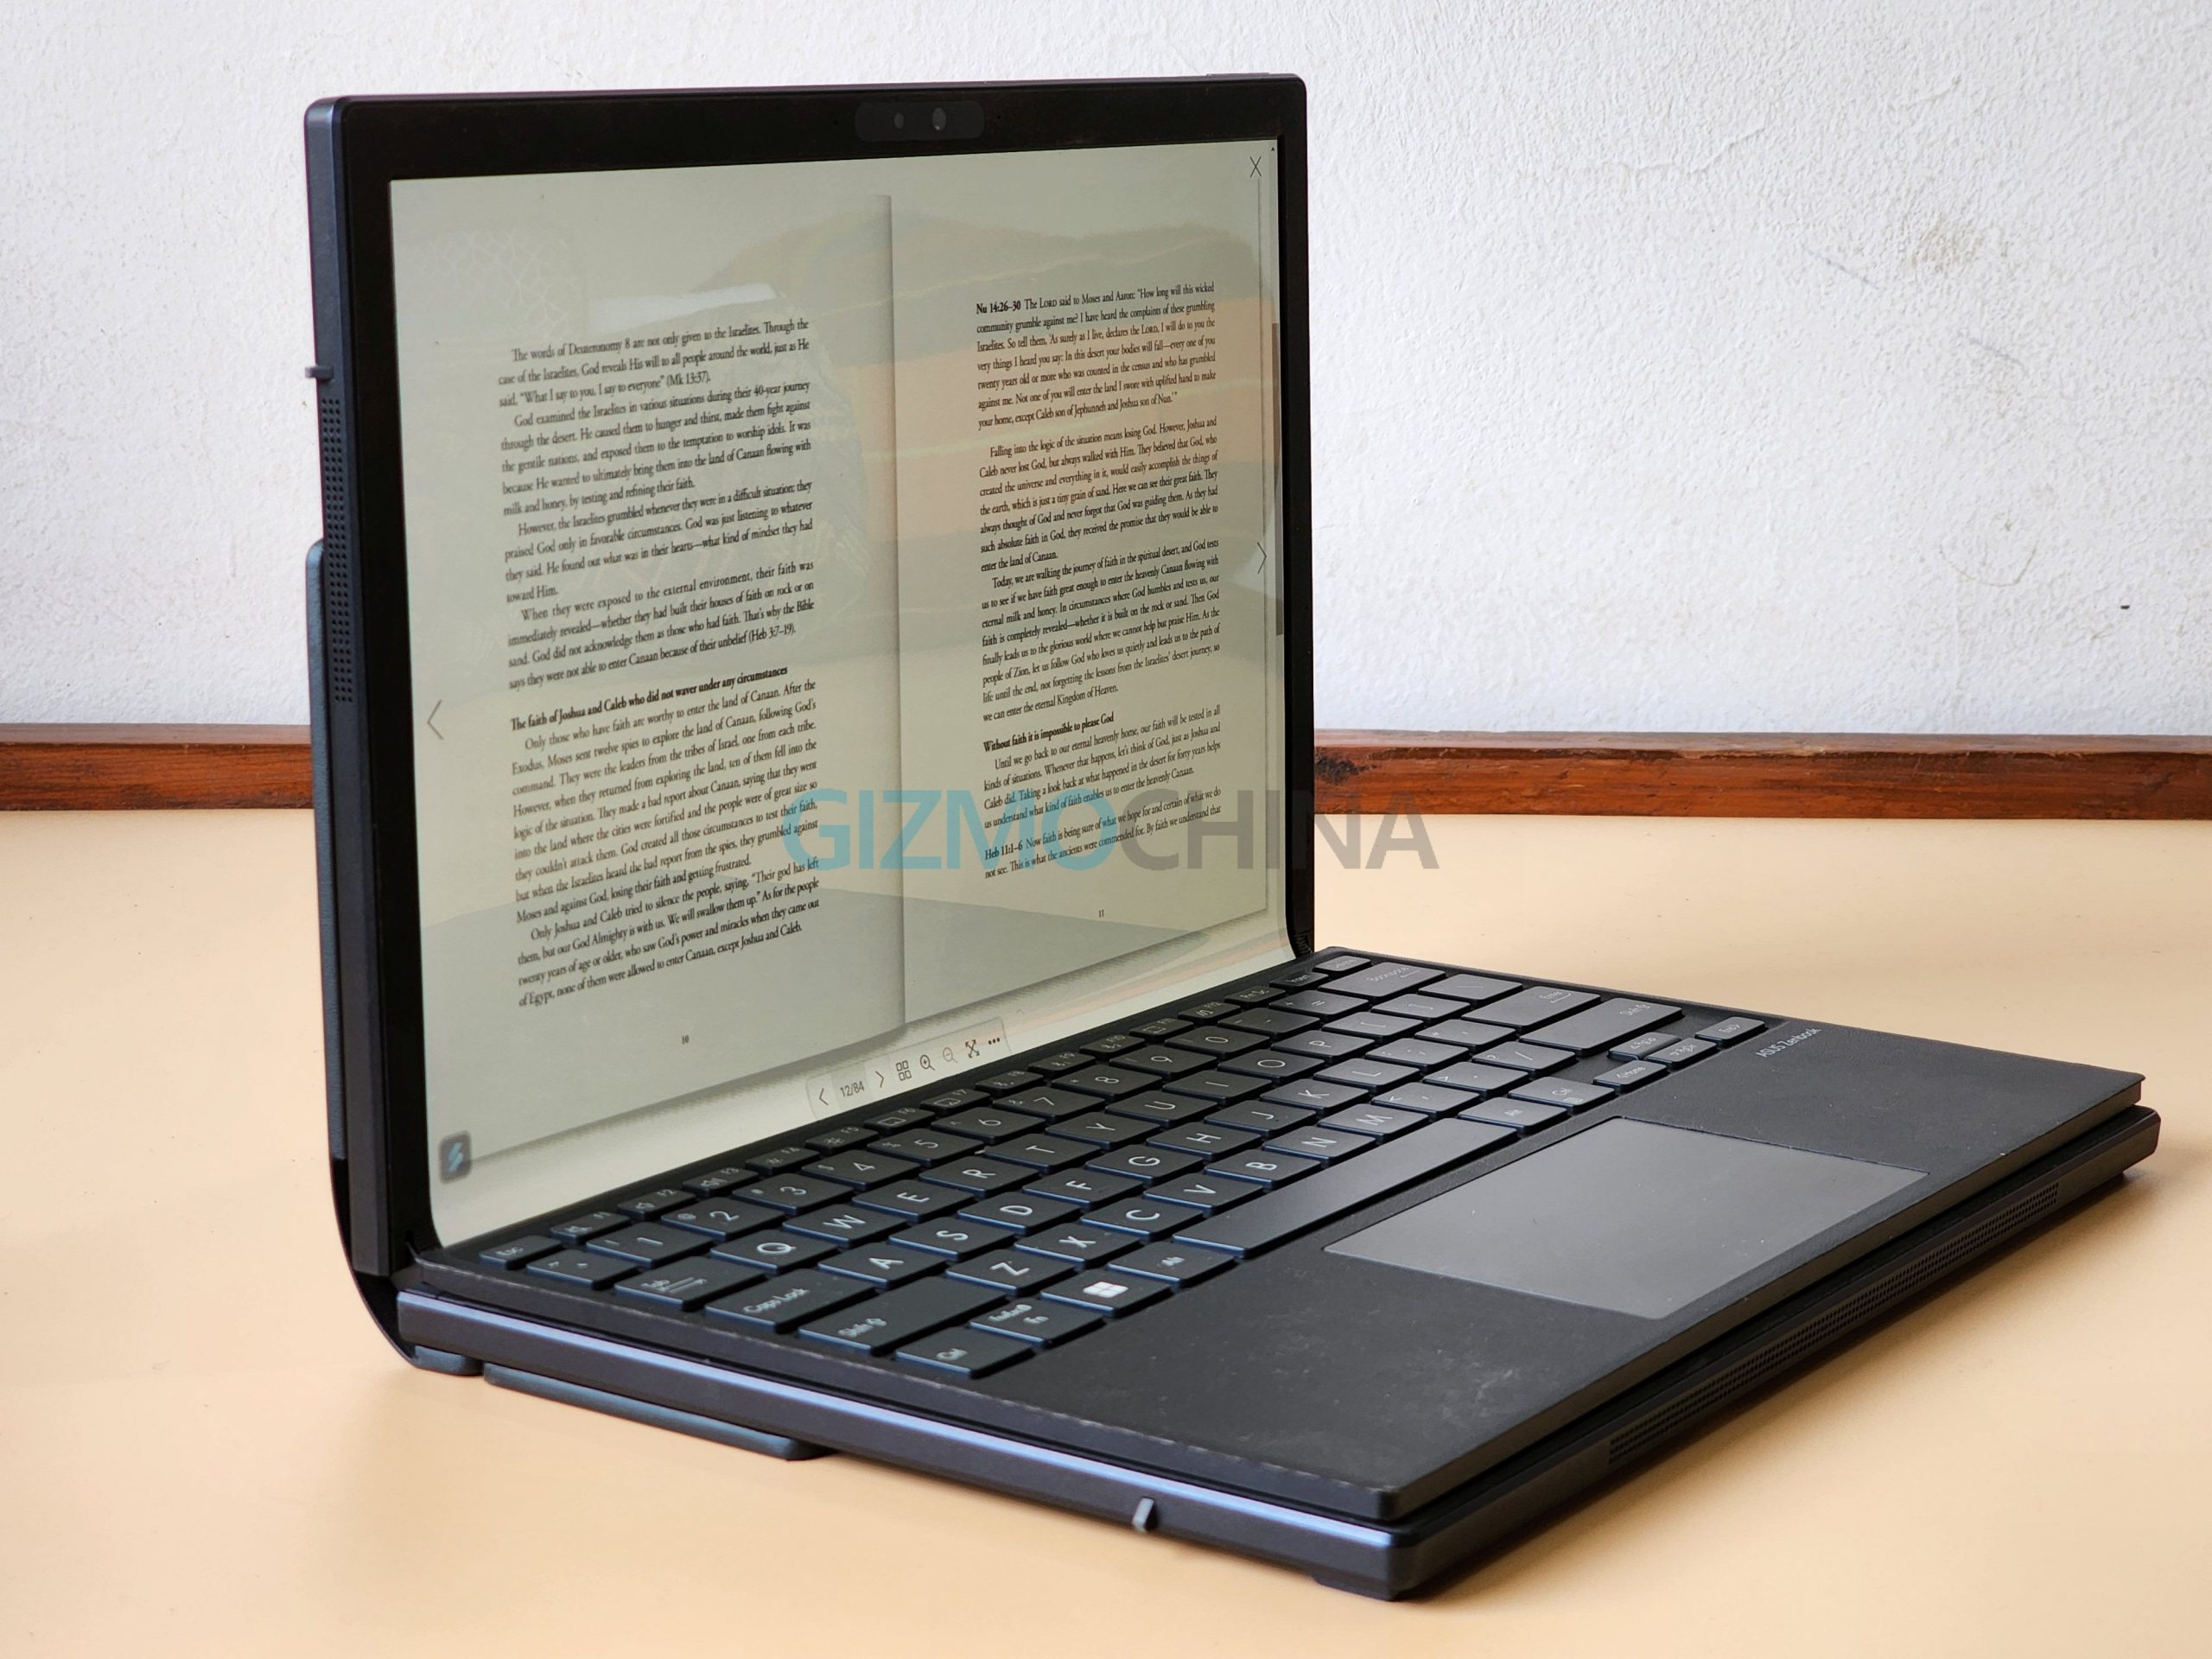 Asus Zenbook 17 Fold OLEDz